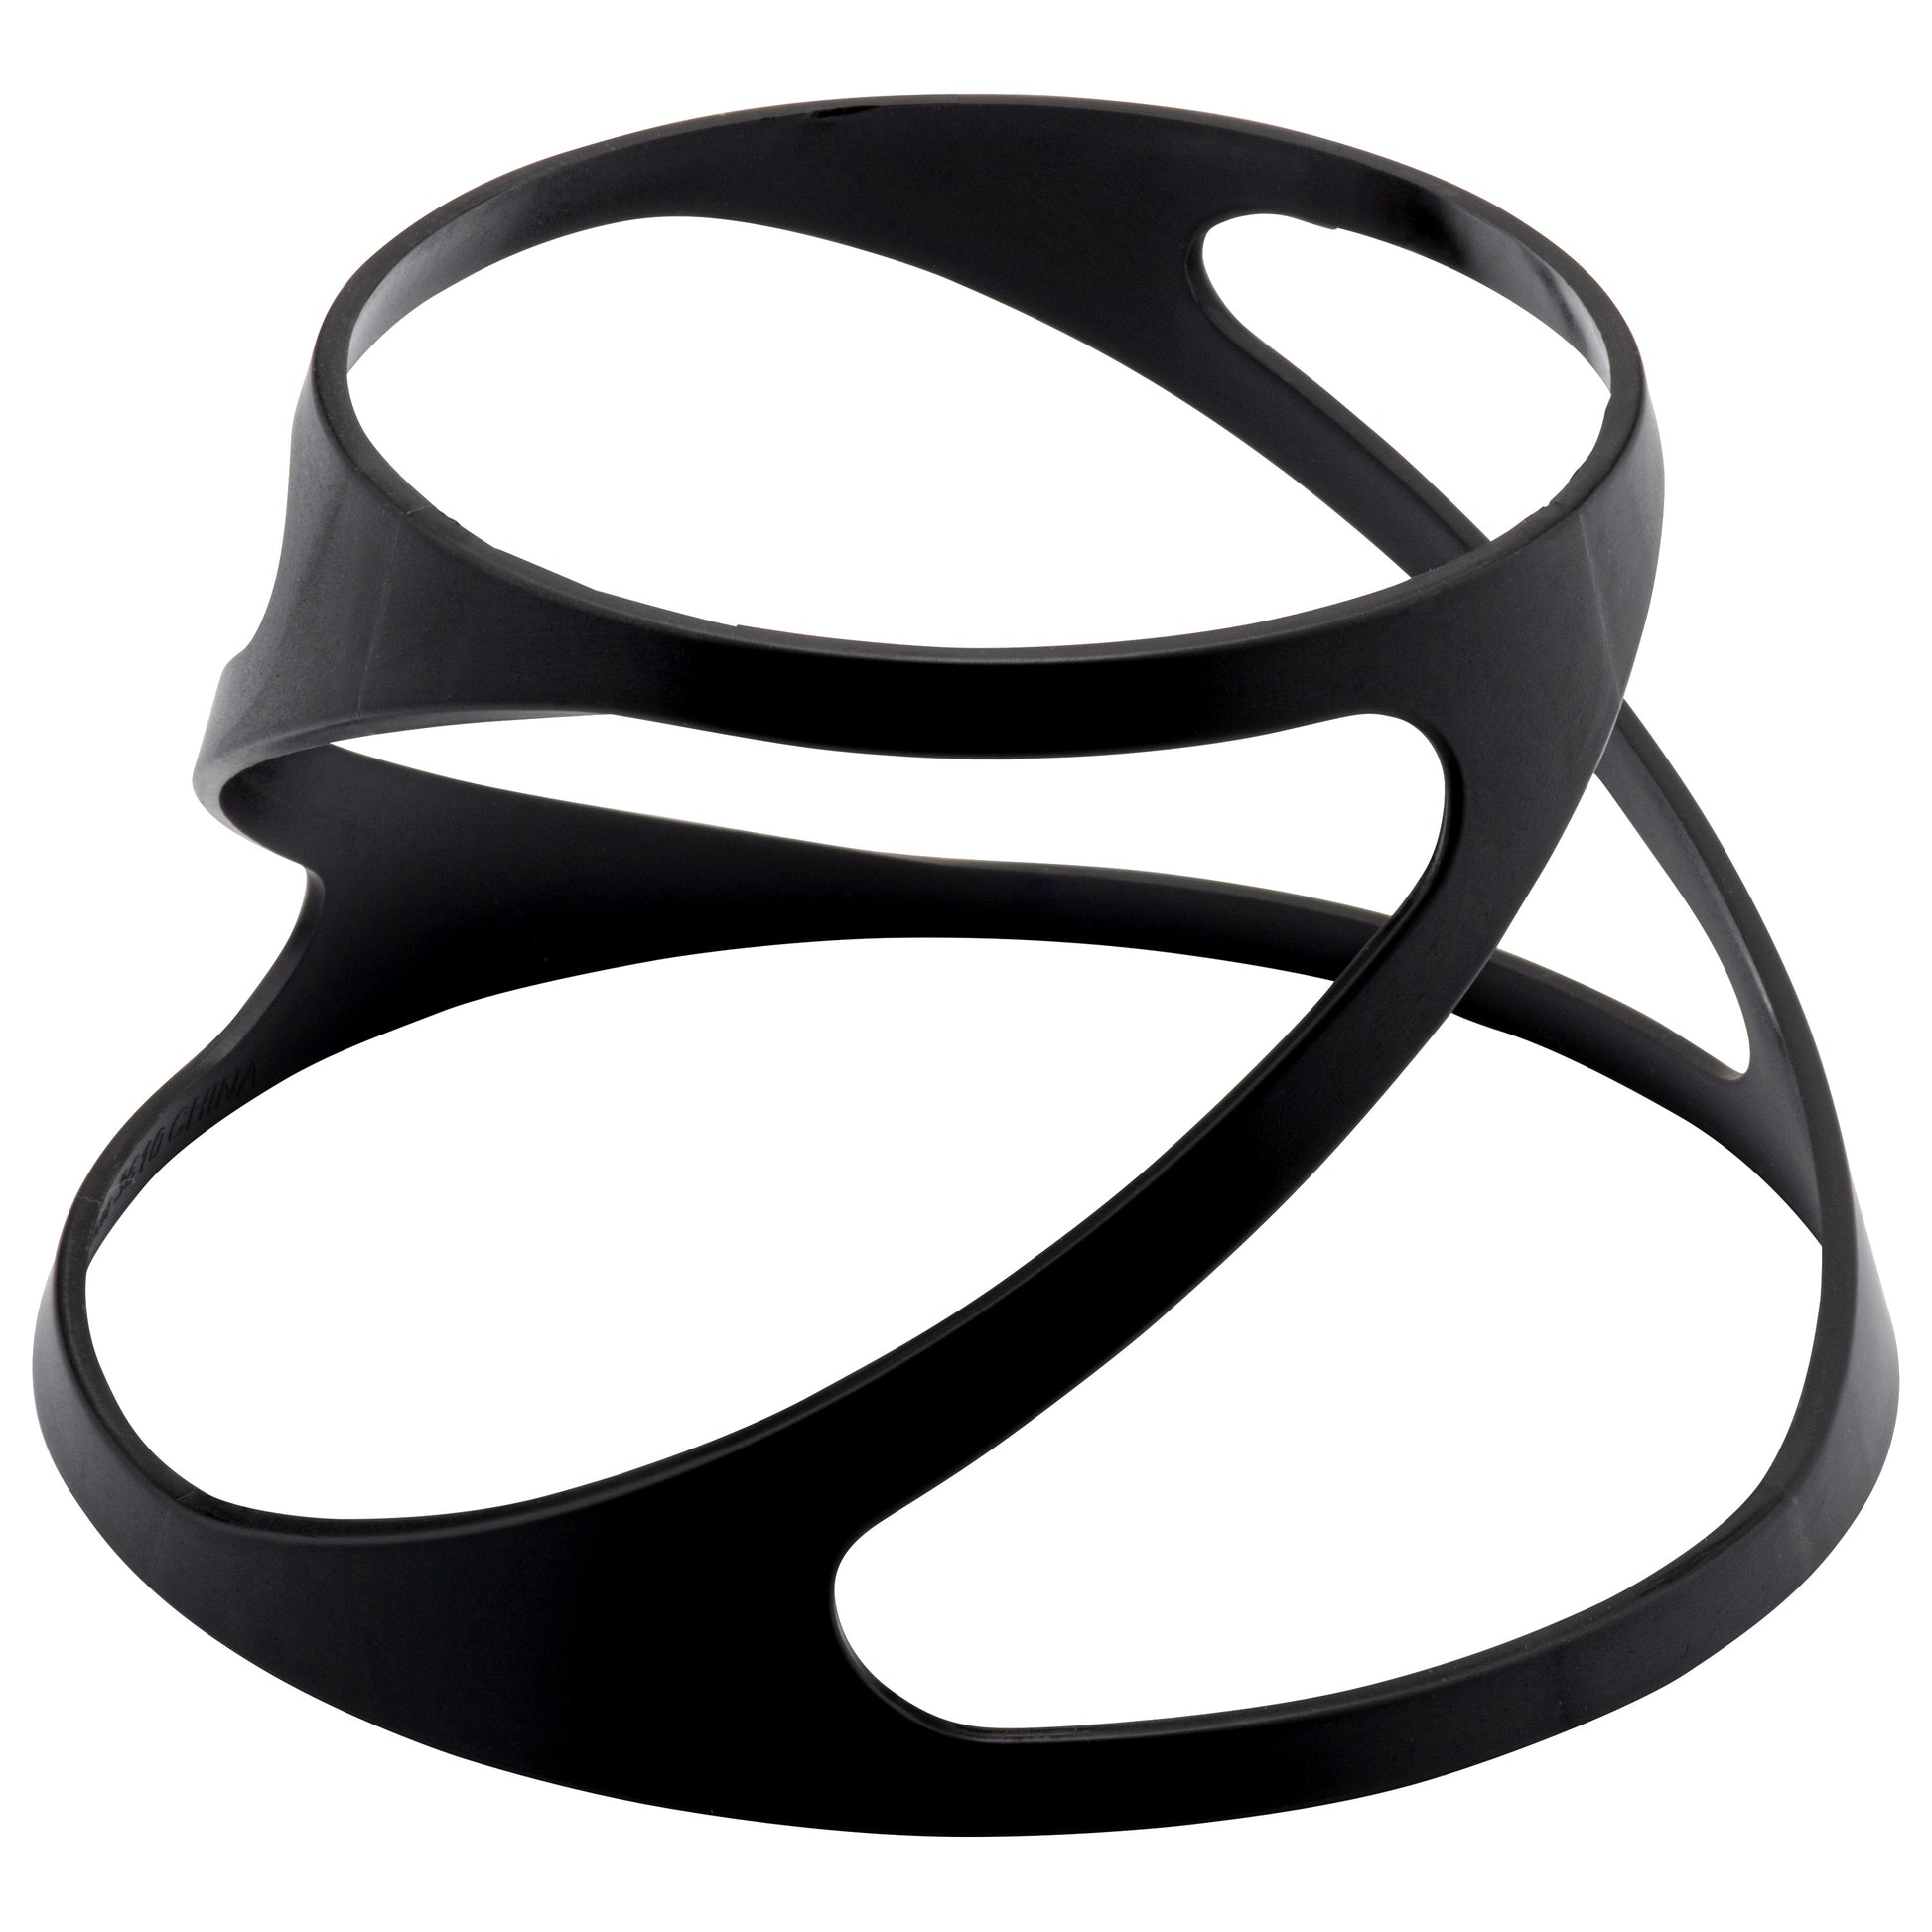 Zwarte Twister verhoger met een diameter van 10 cm